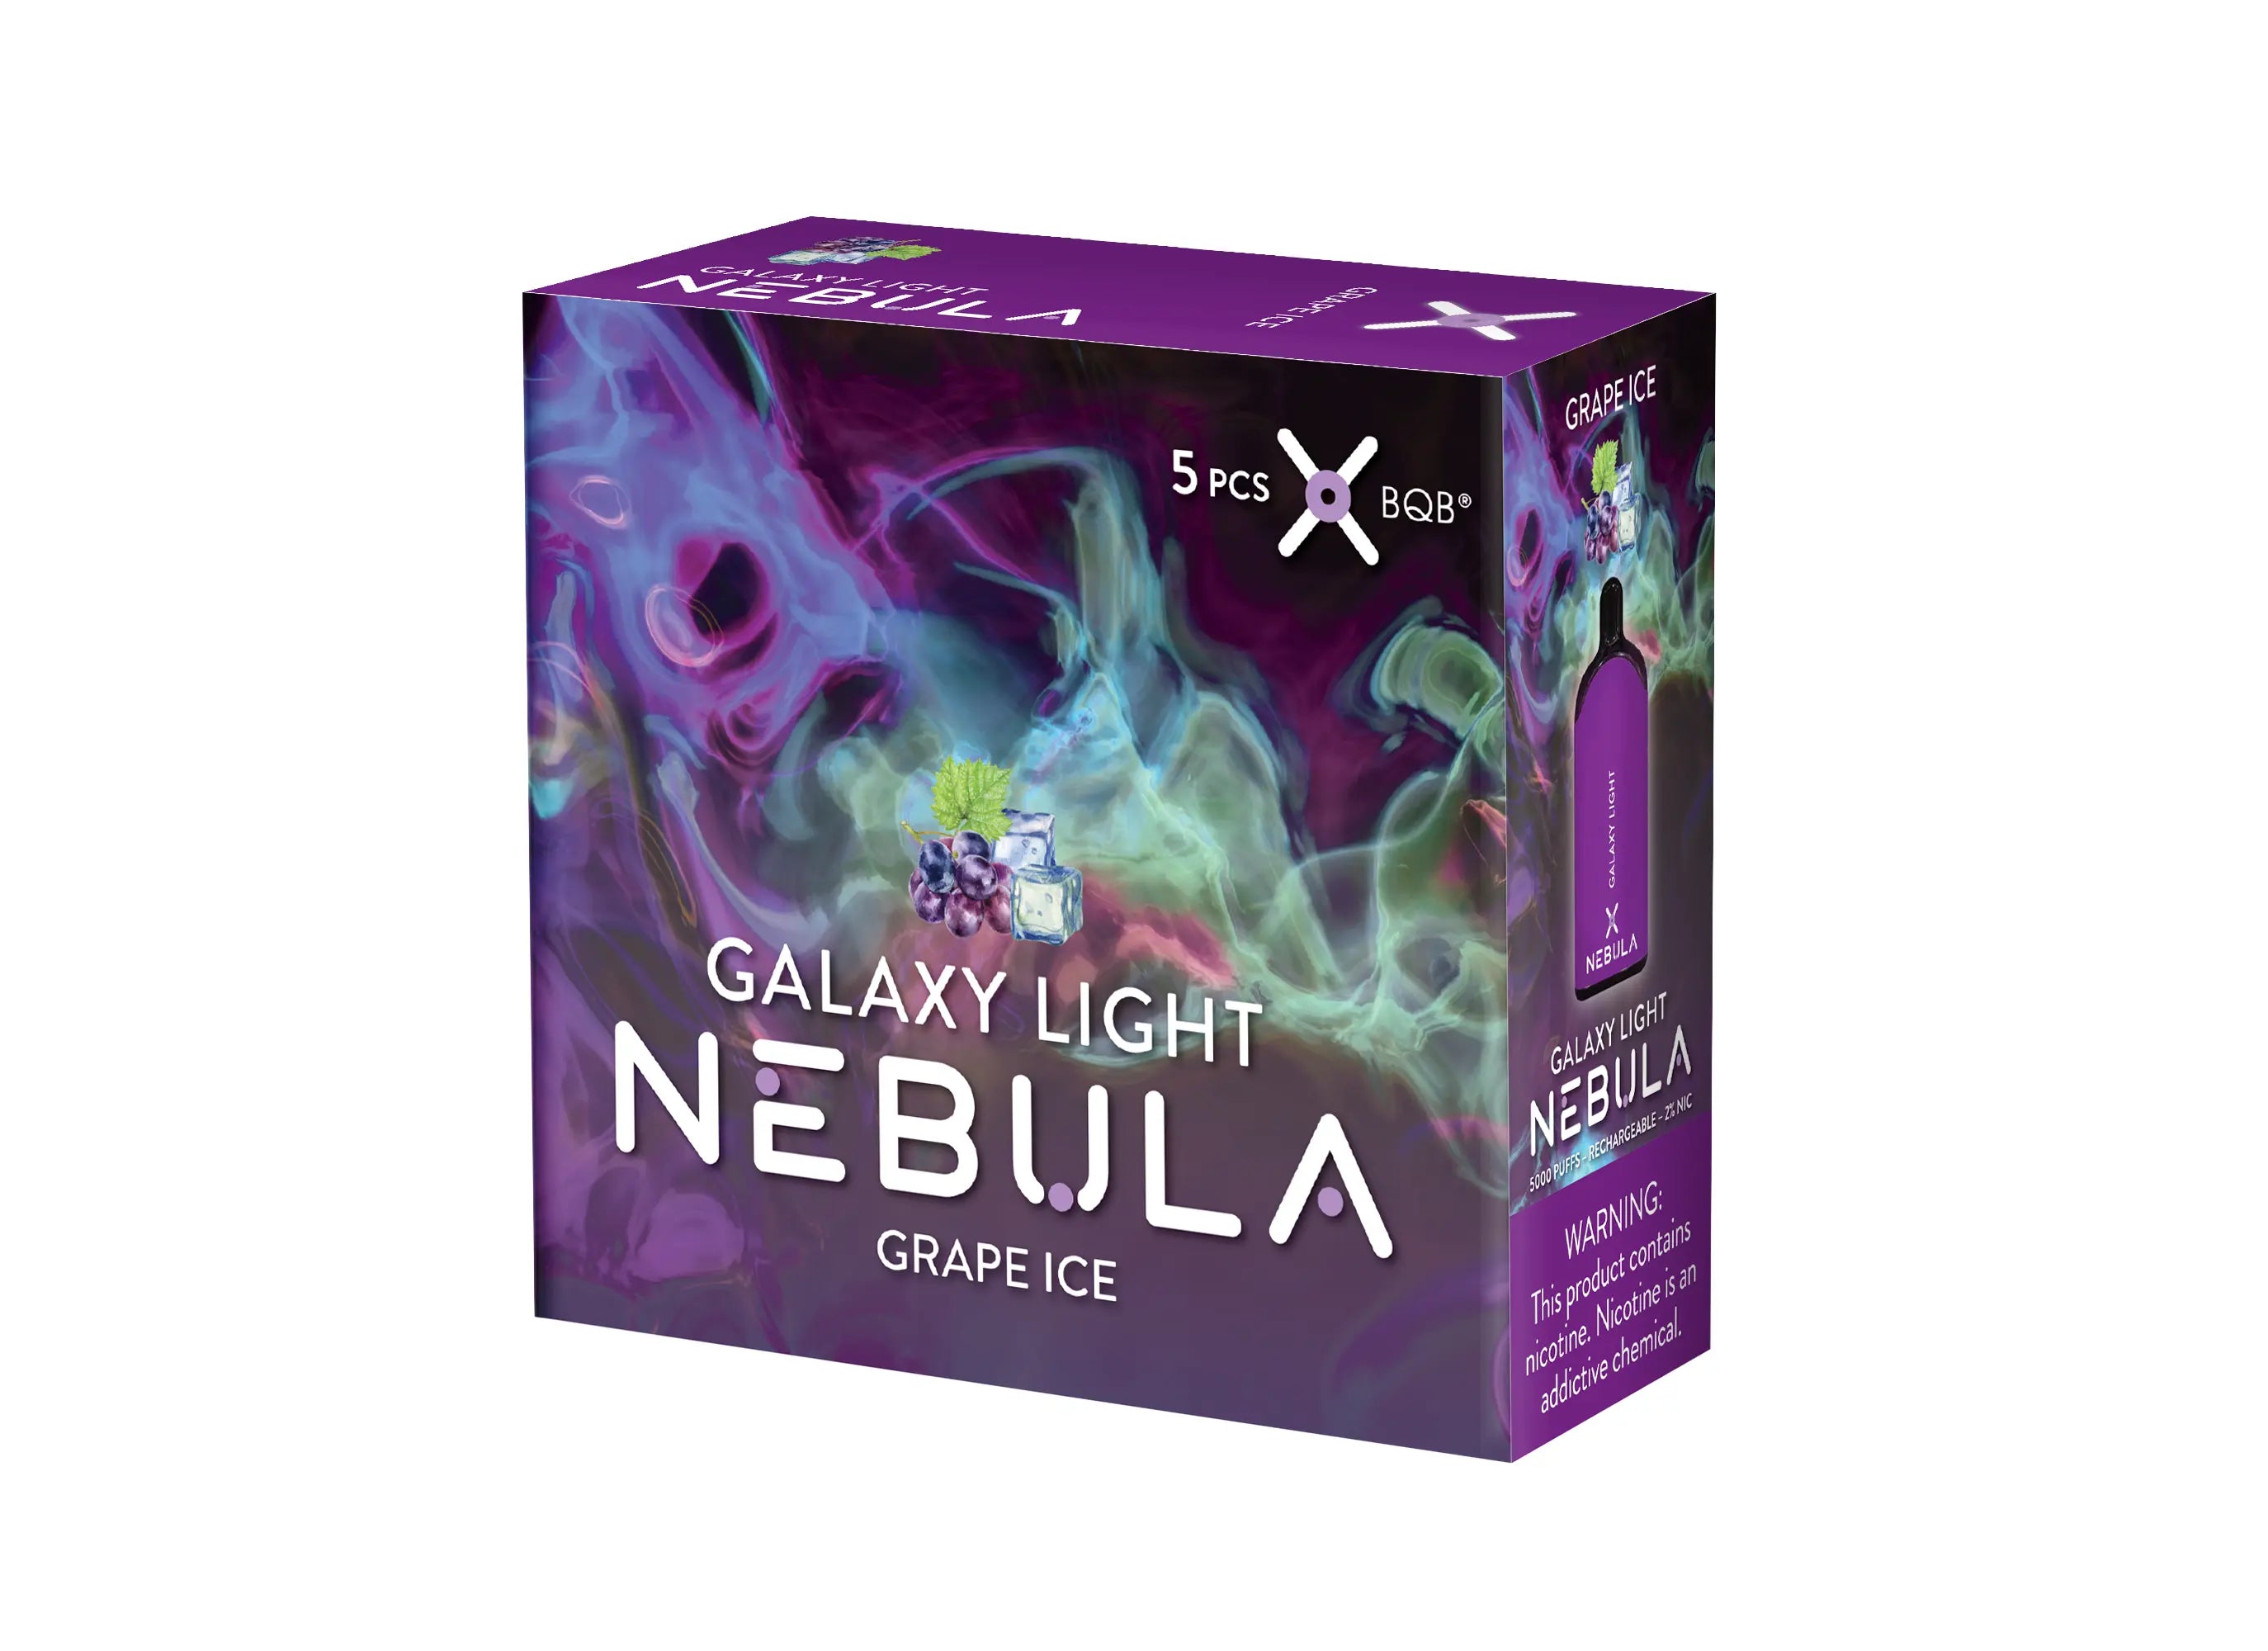 Nebula Galaxy Light 2% 5000 Puffs Vape - Grape Ice - B2B Nebula